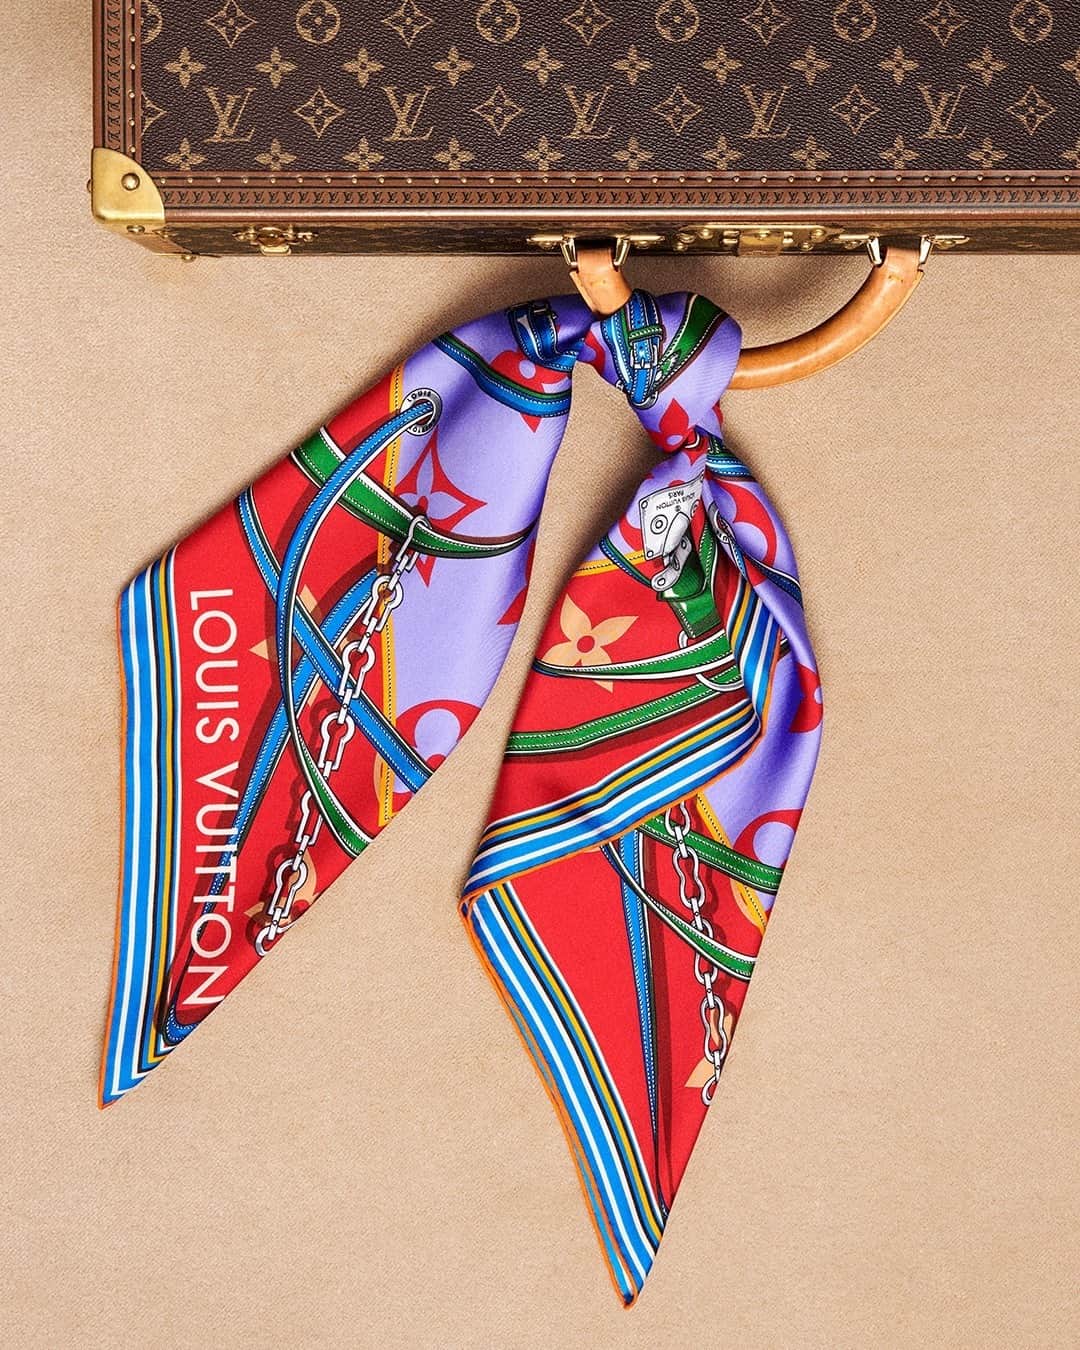 Louis Vuitton on Instagram: Escape through scent. #LouisVuitton's